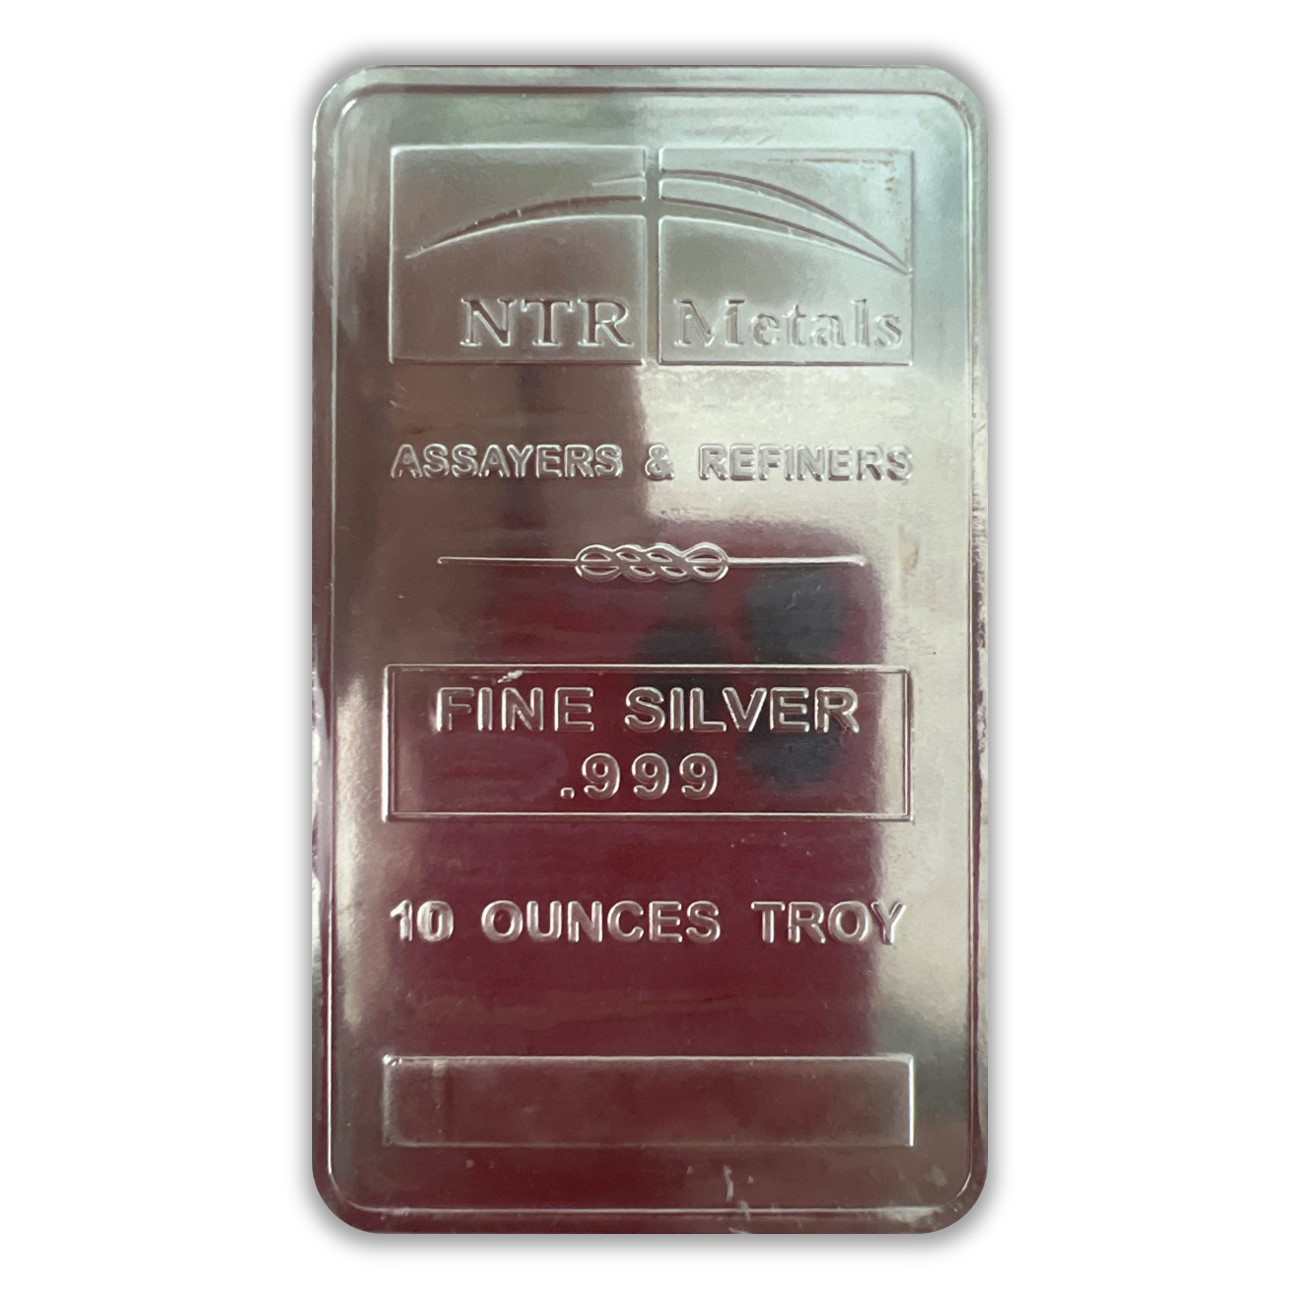 NTR Metals 10 oz Silver Bar